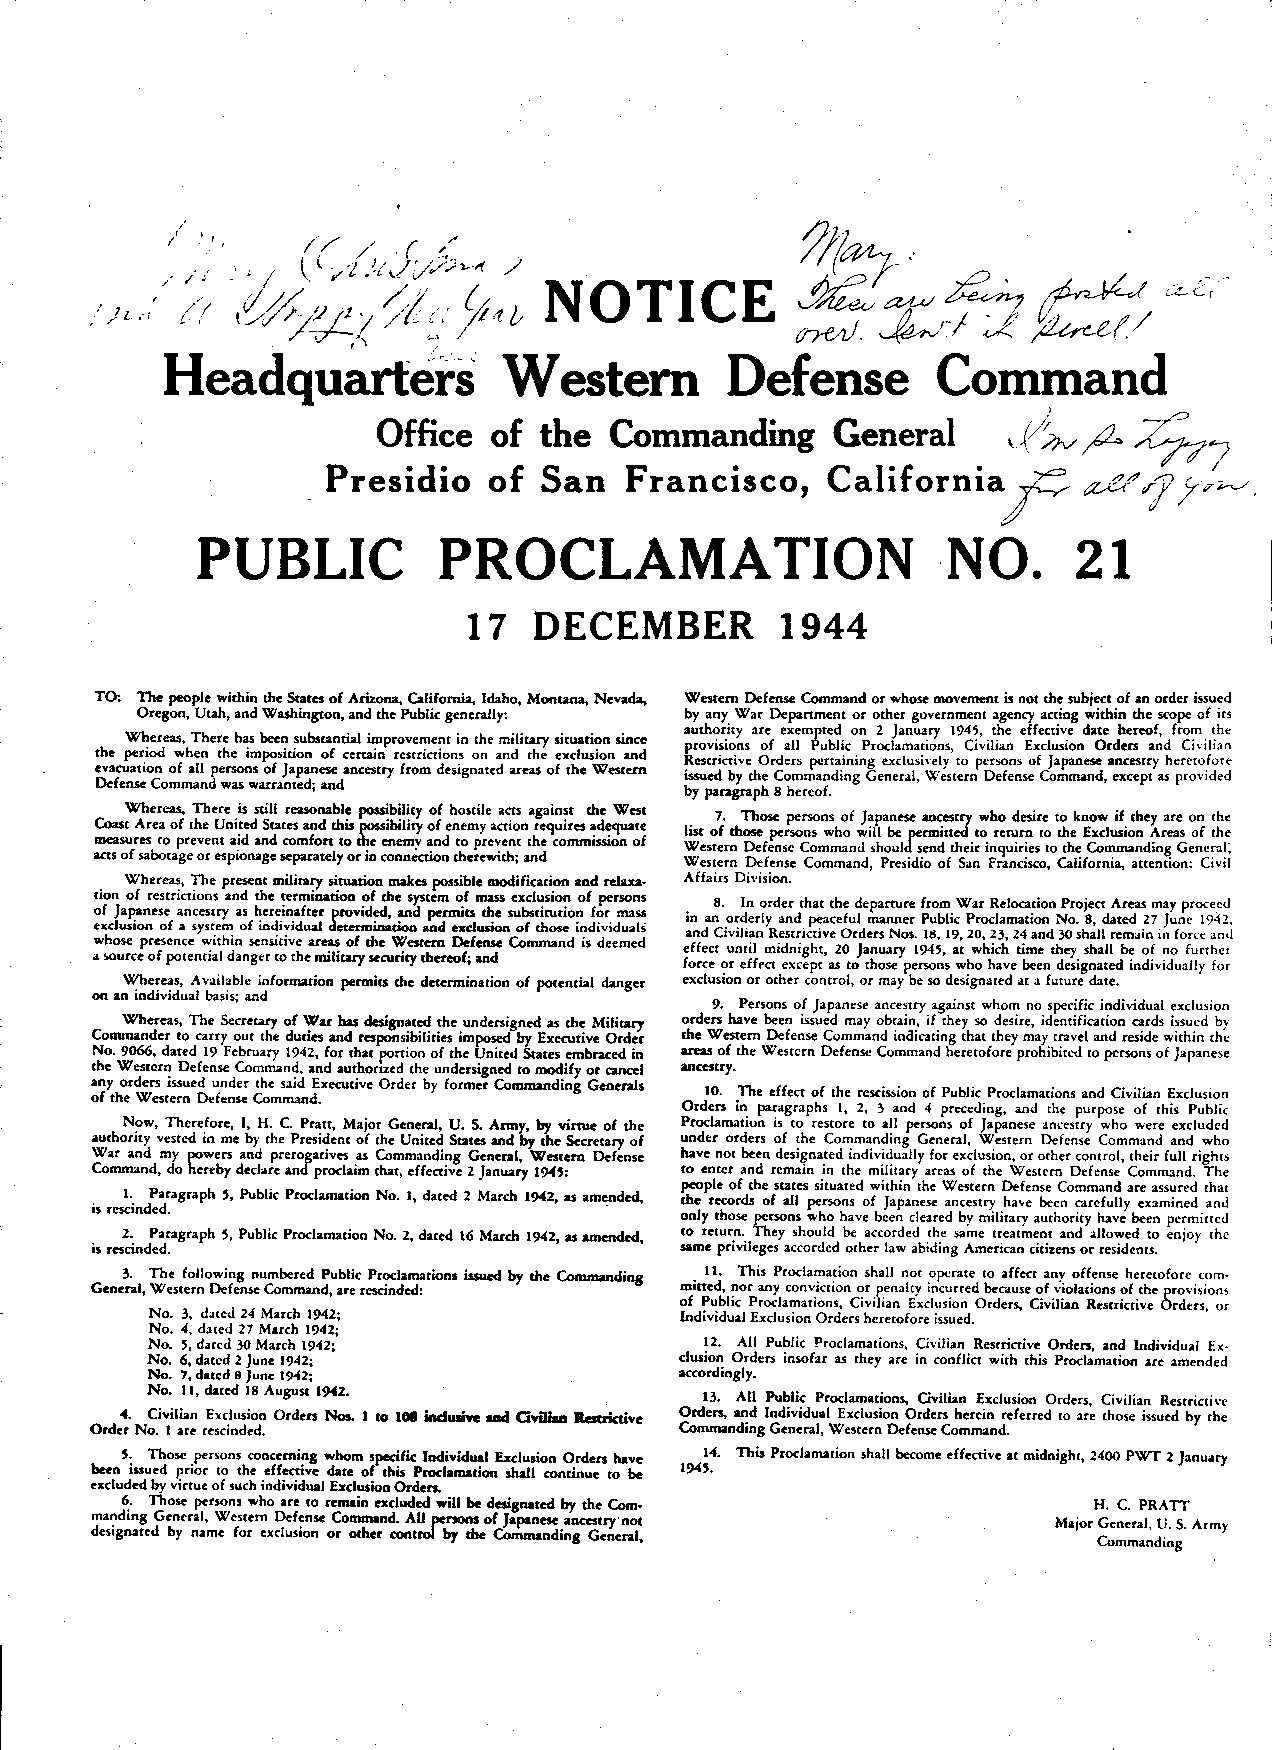 Public Proclamation No. 21